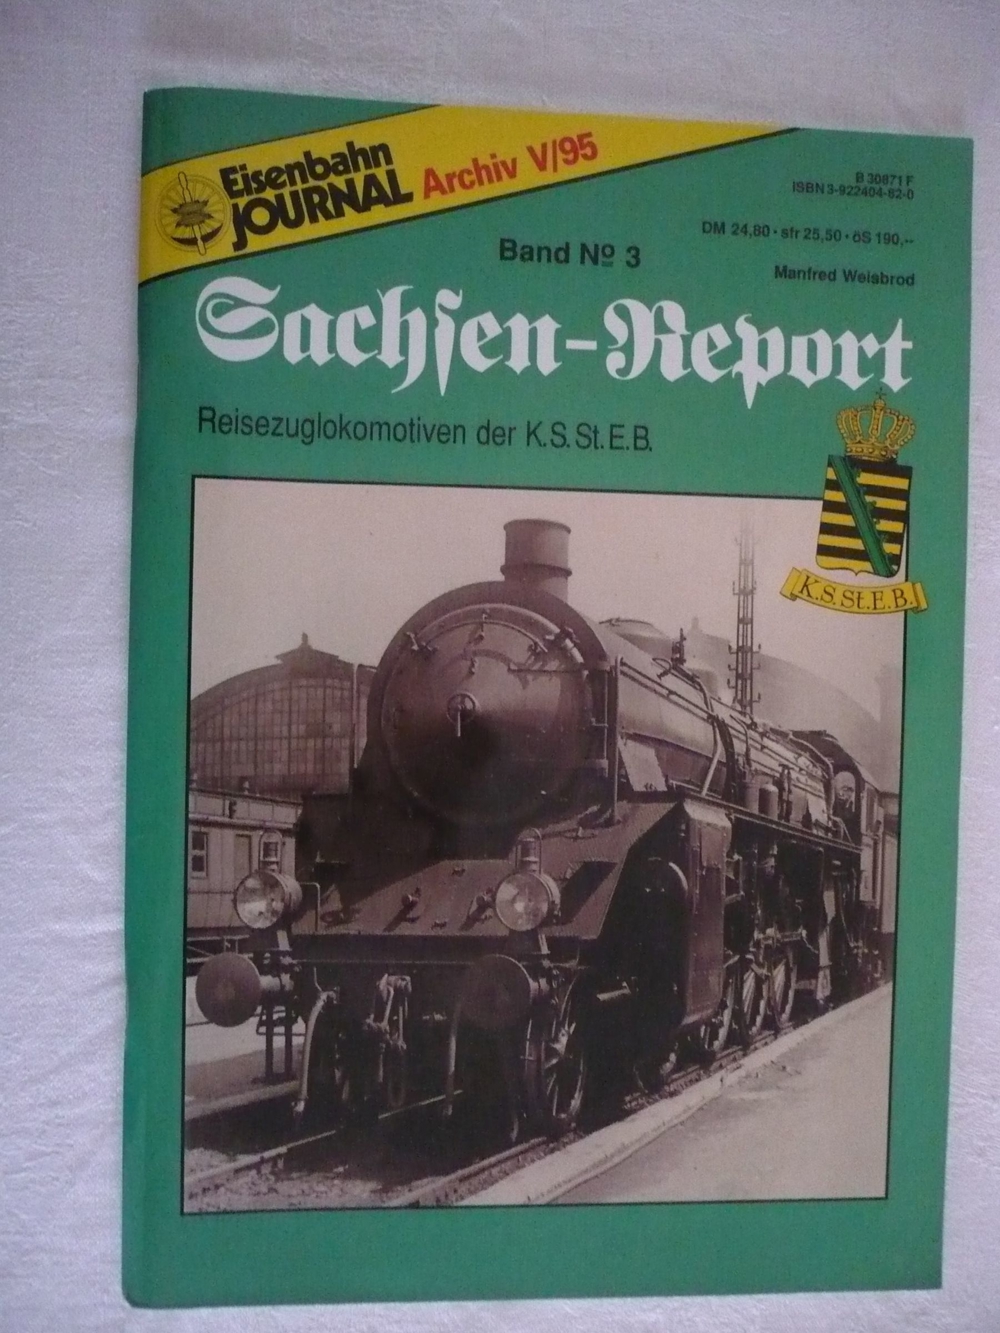 Eisenbahn Journal V/95, Sachsen-Report 3